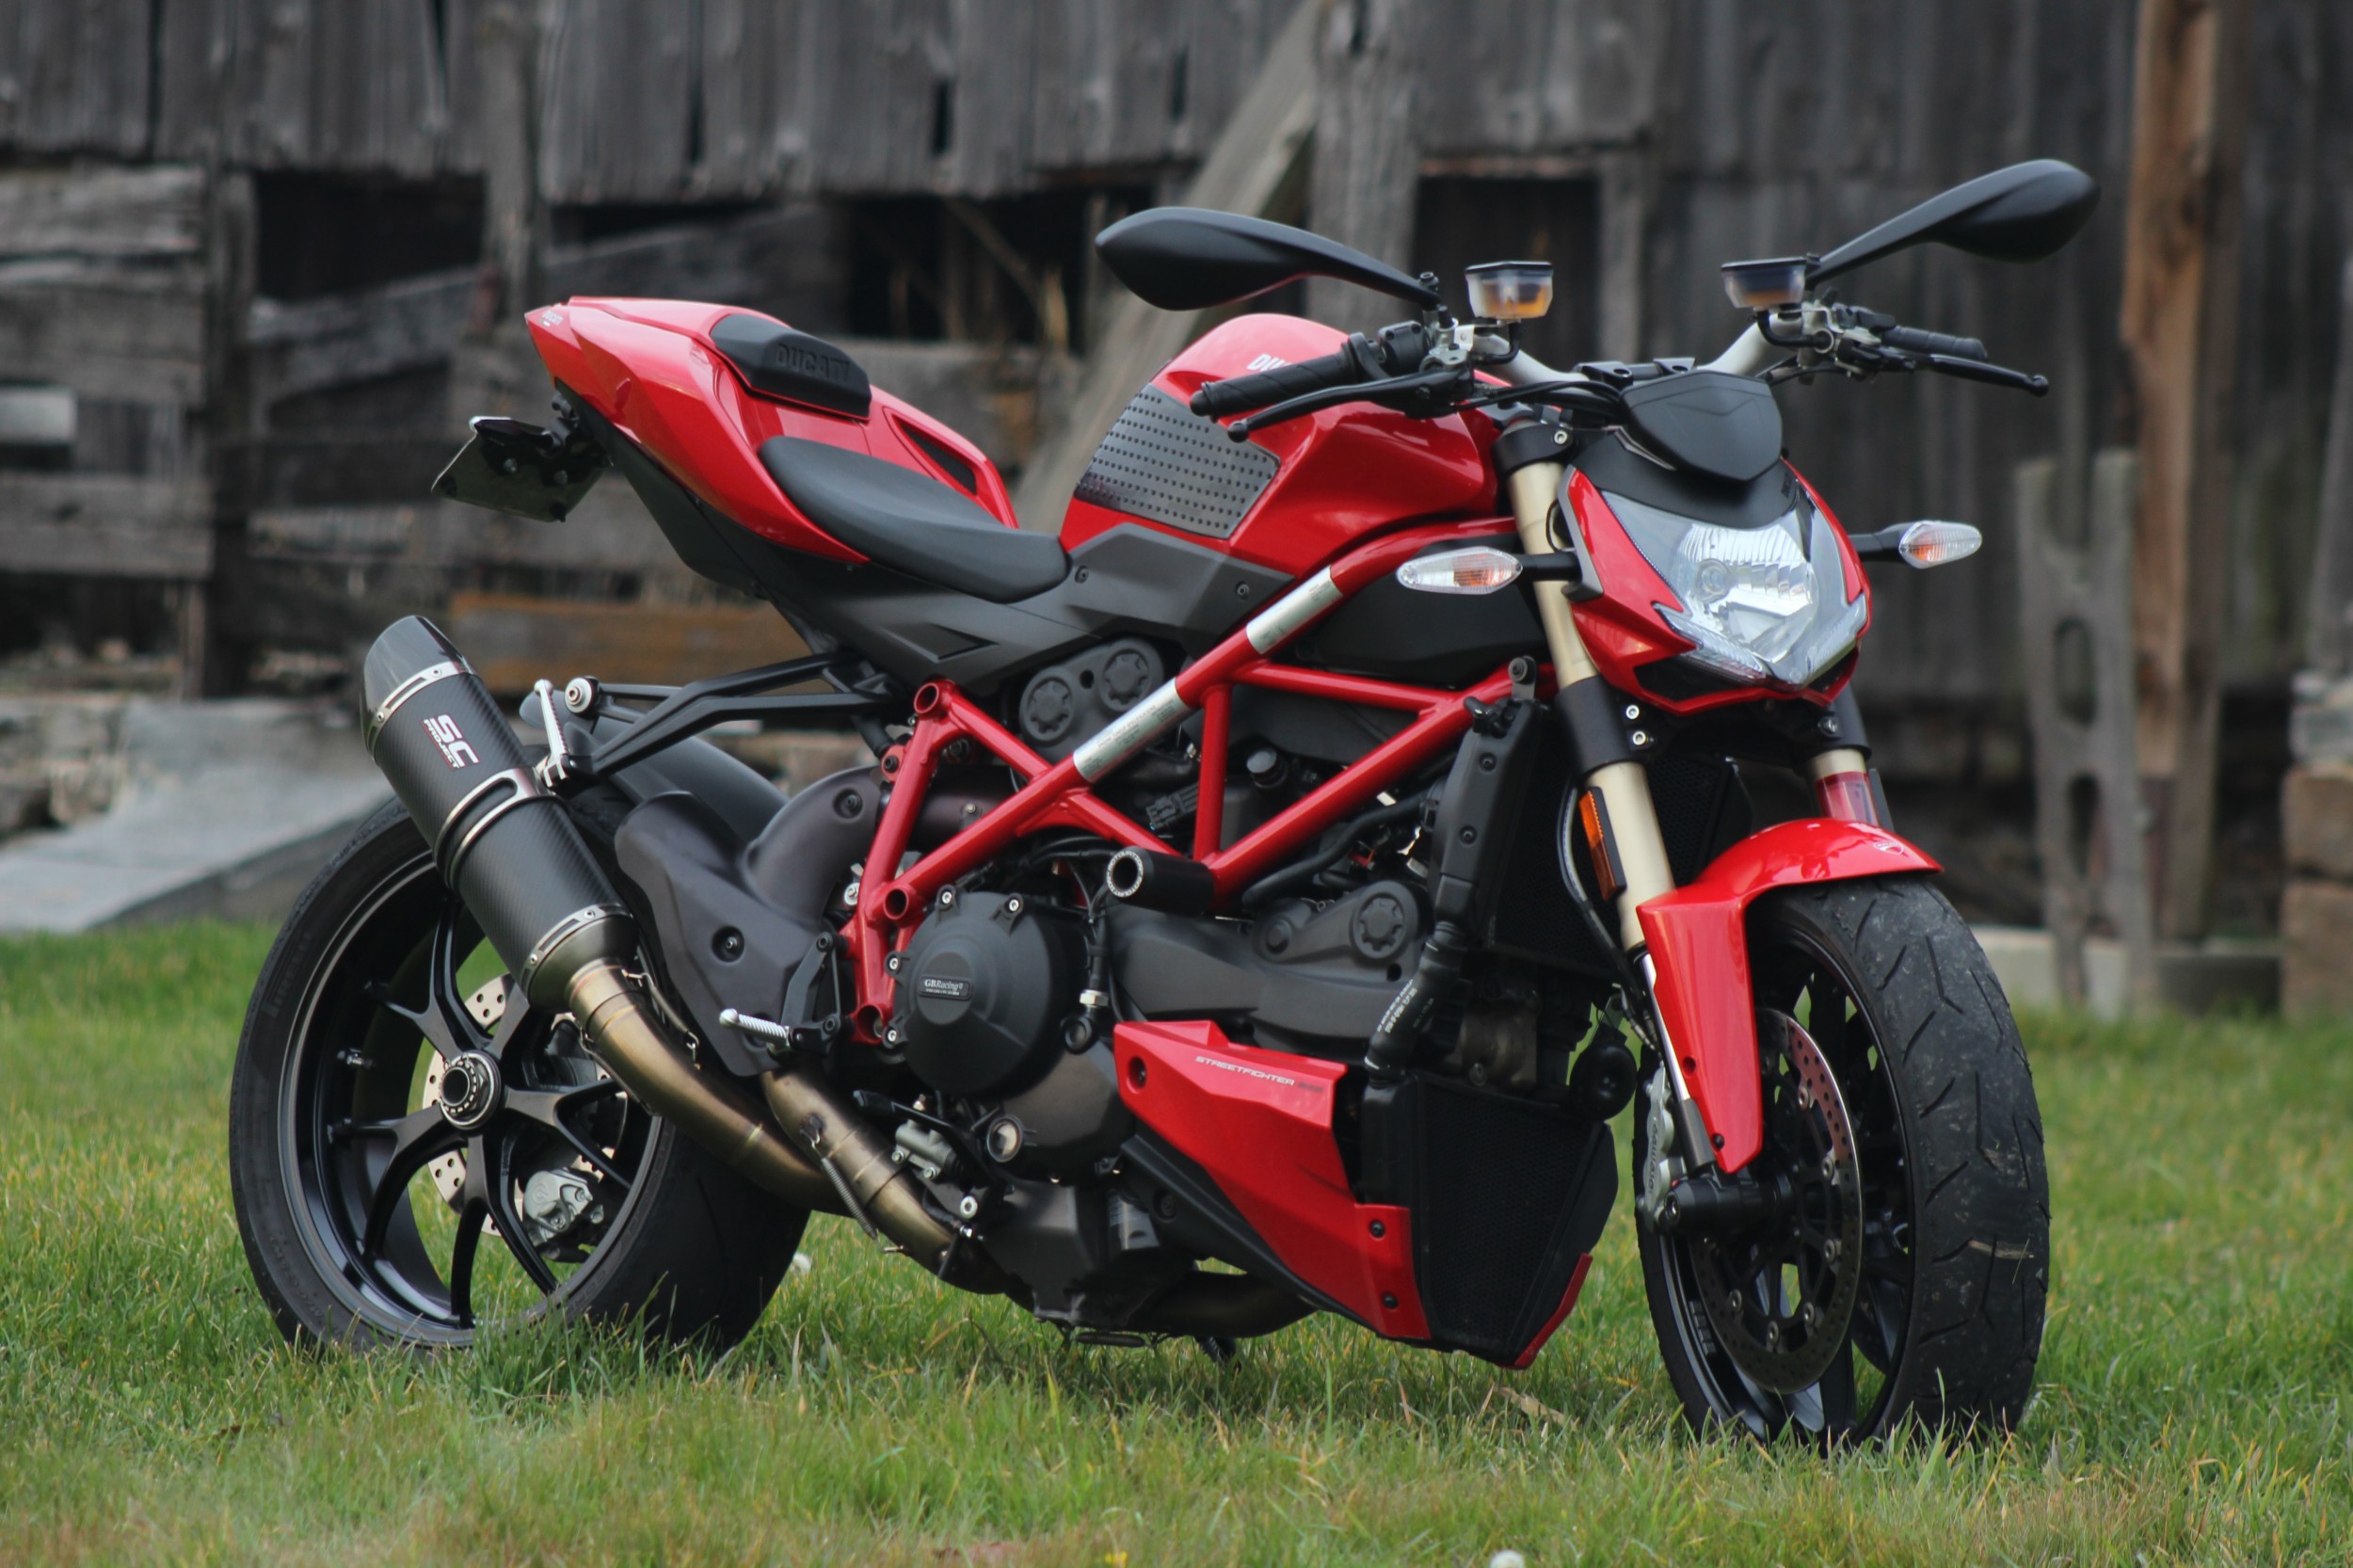 Wifey's Ducati Streetfighter 848